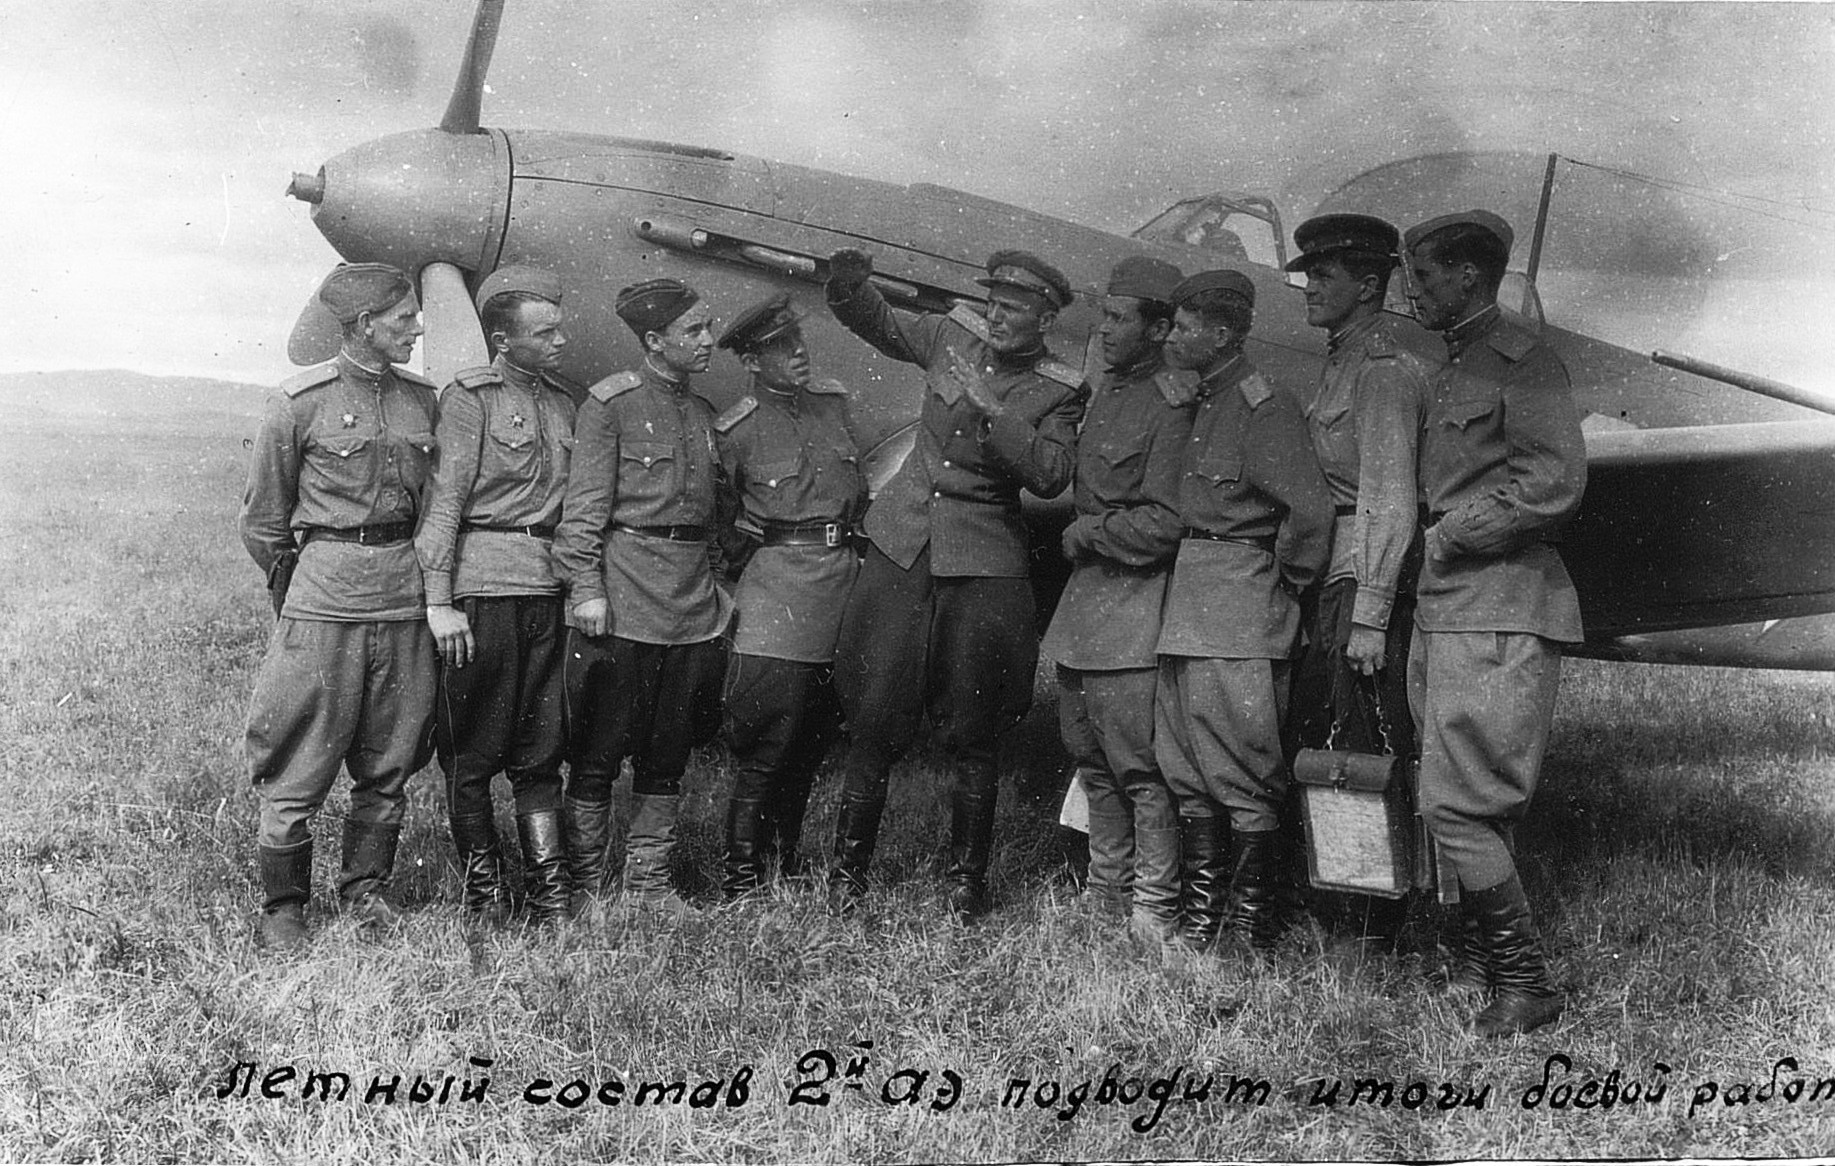 yak9 ftr in combat foto WW2